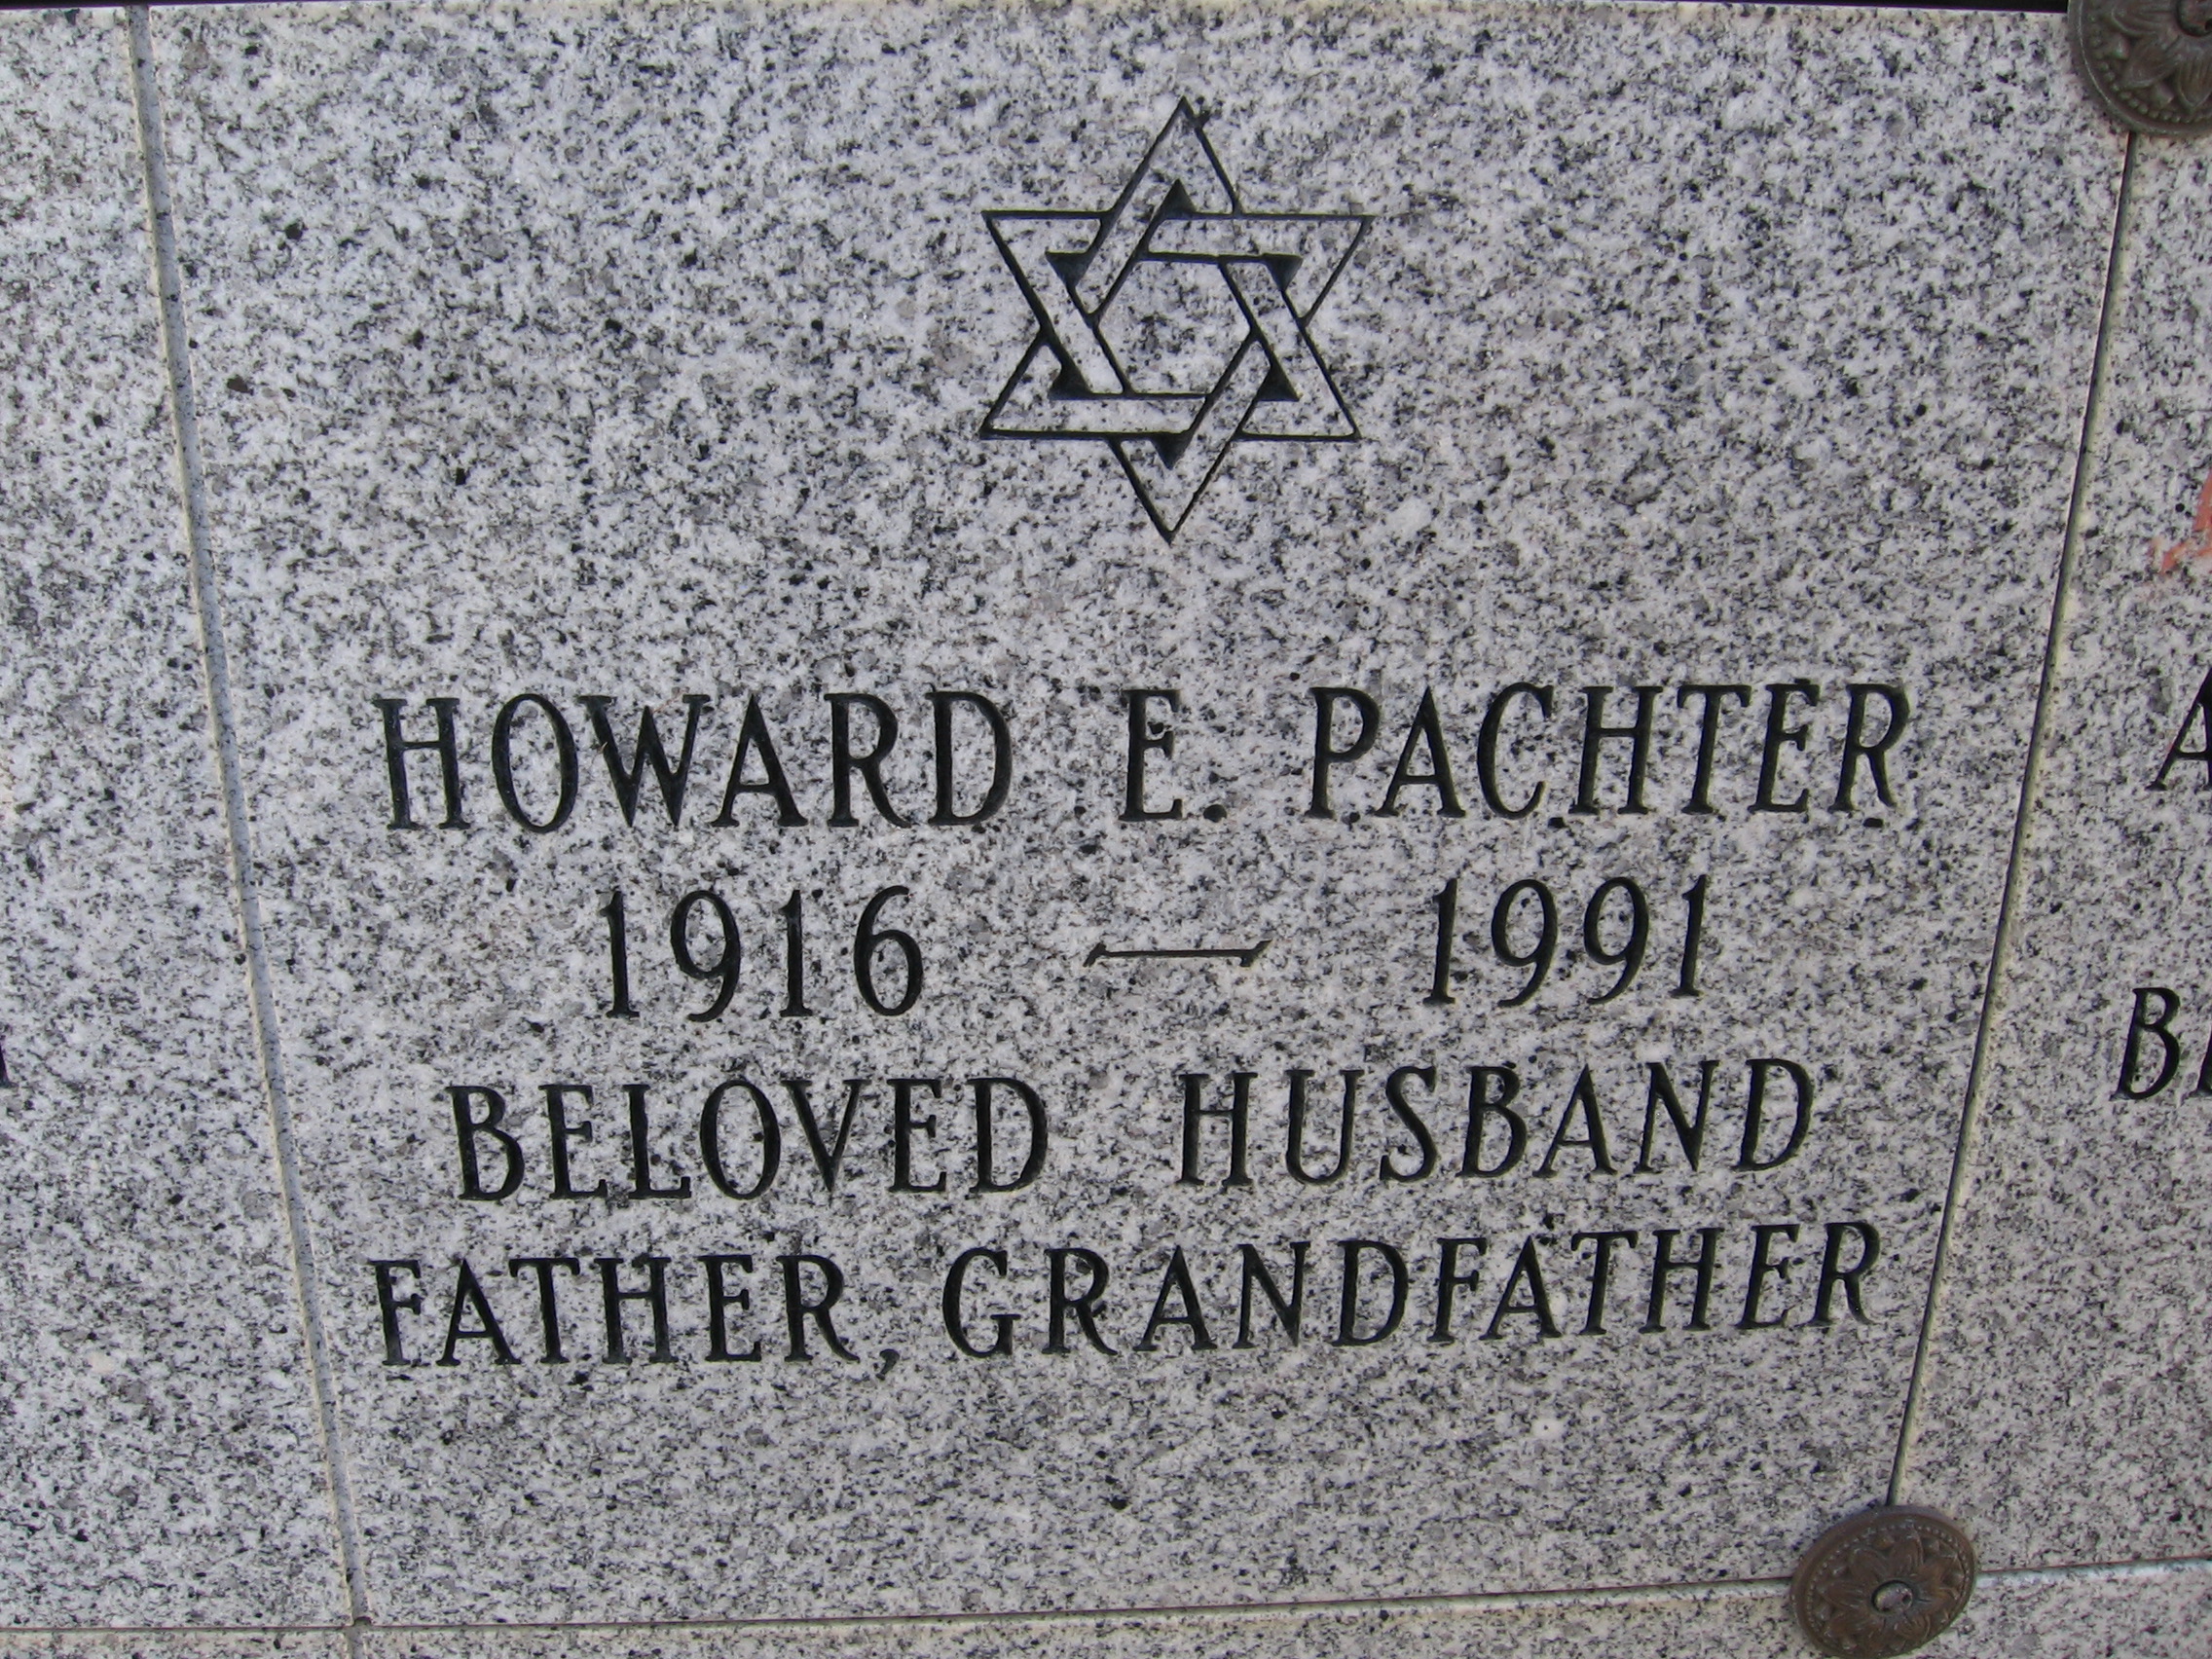 Howard E Pachter